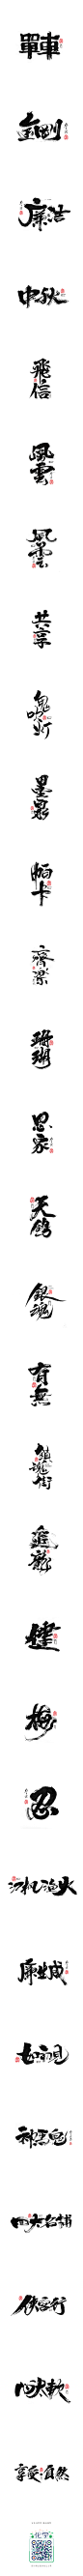 毛笔书写<2017玖月>-字体传奇网-中国首个字体品牌设计师交流网